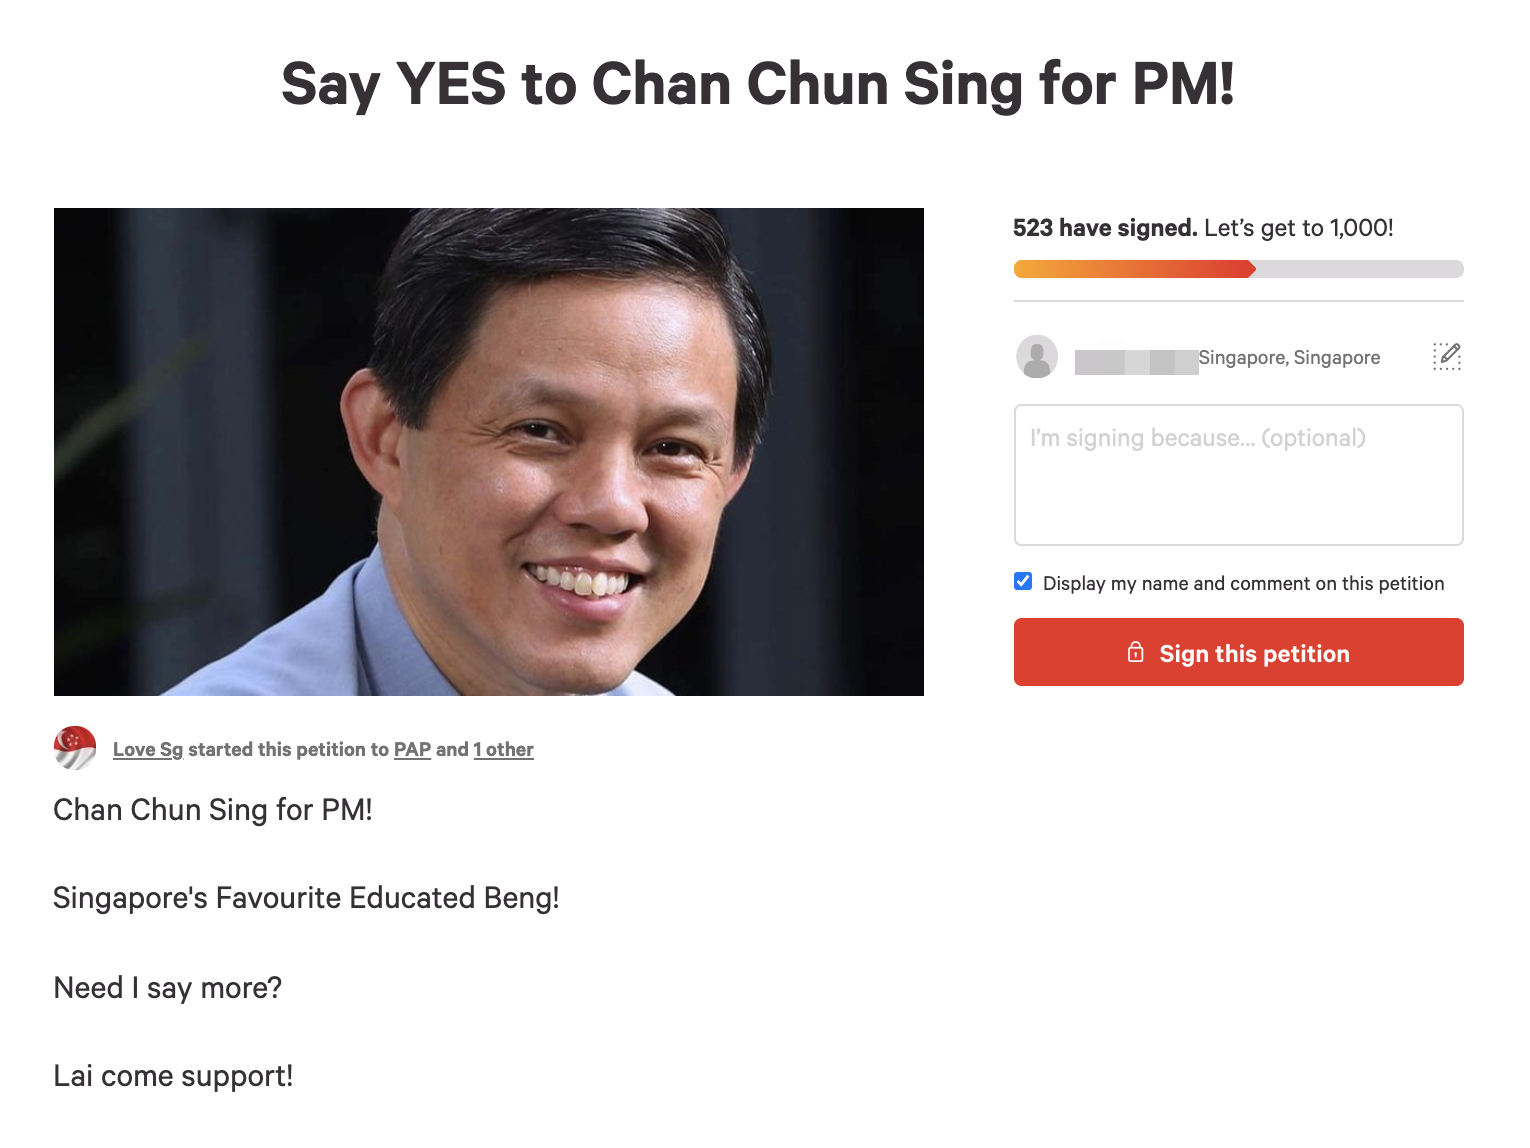 Chan chun sing PM